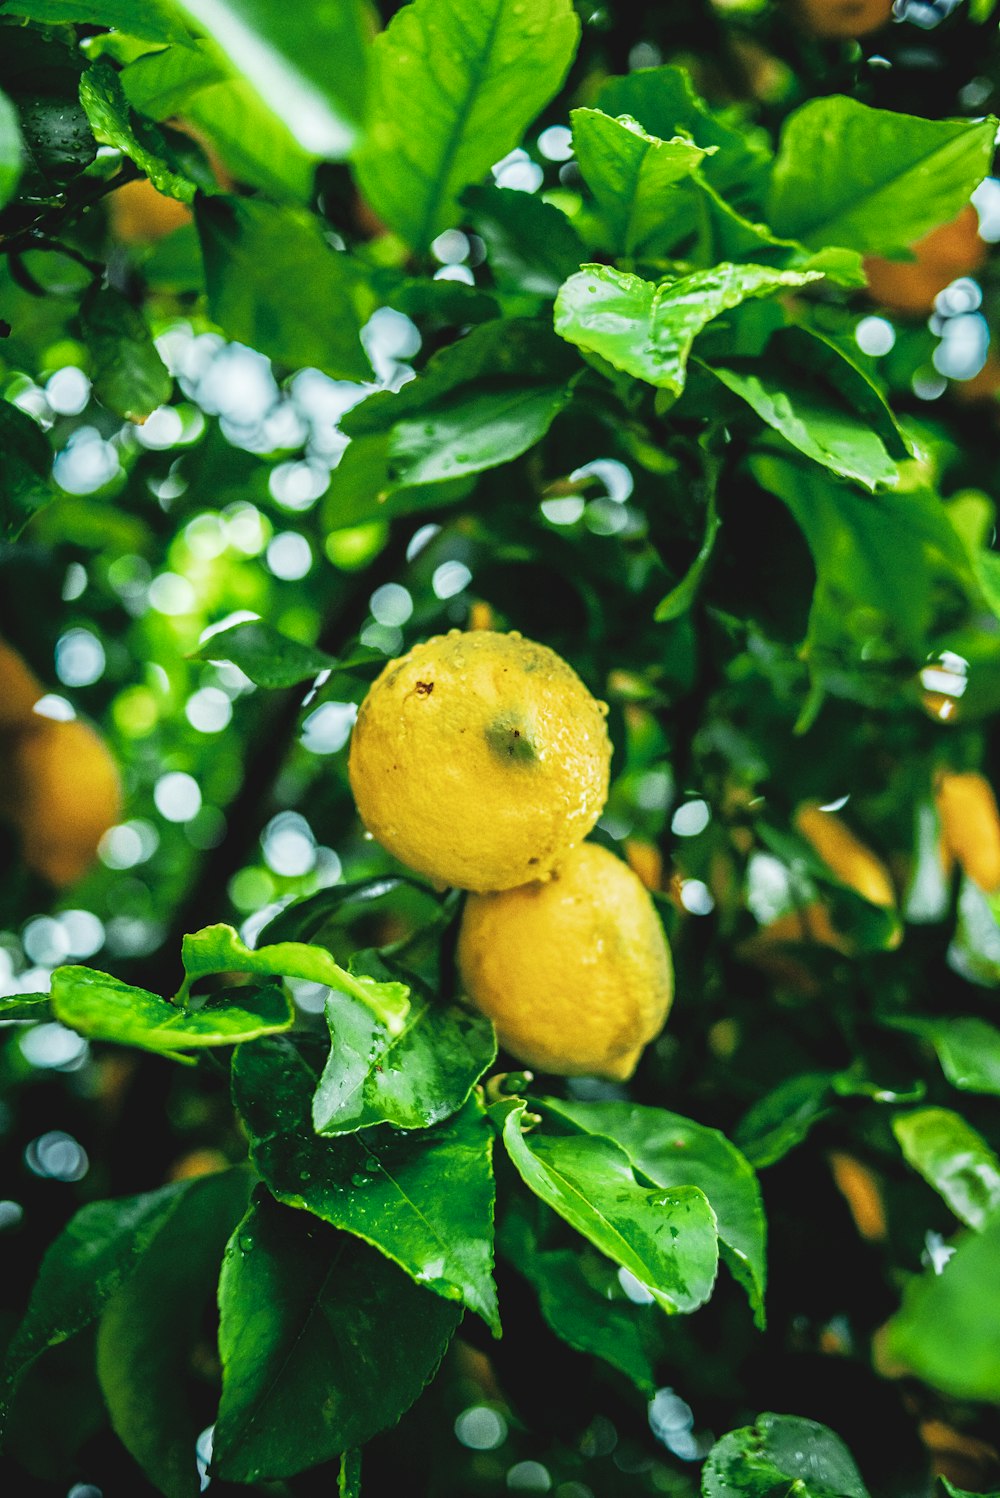 yellow lemon fruit on green leaves